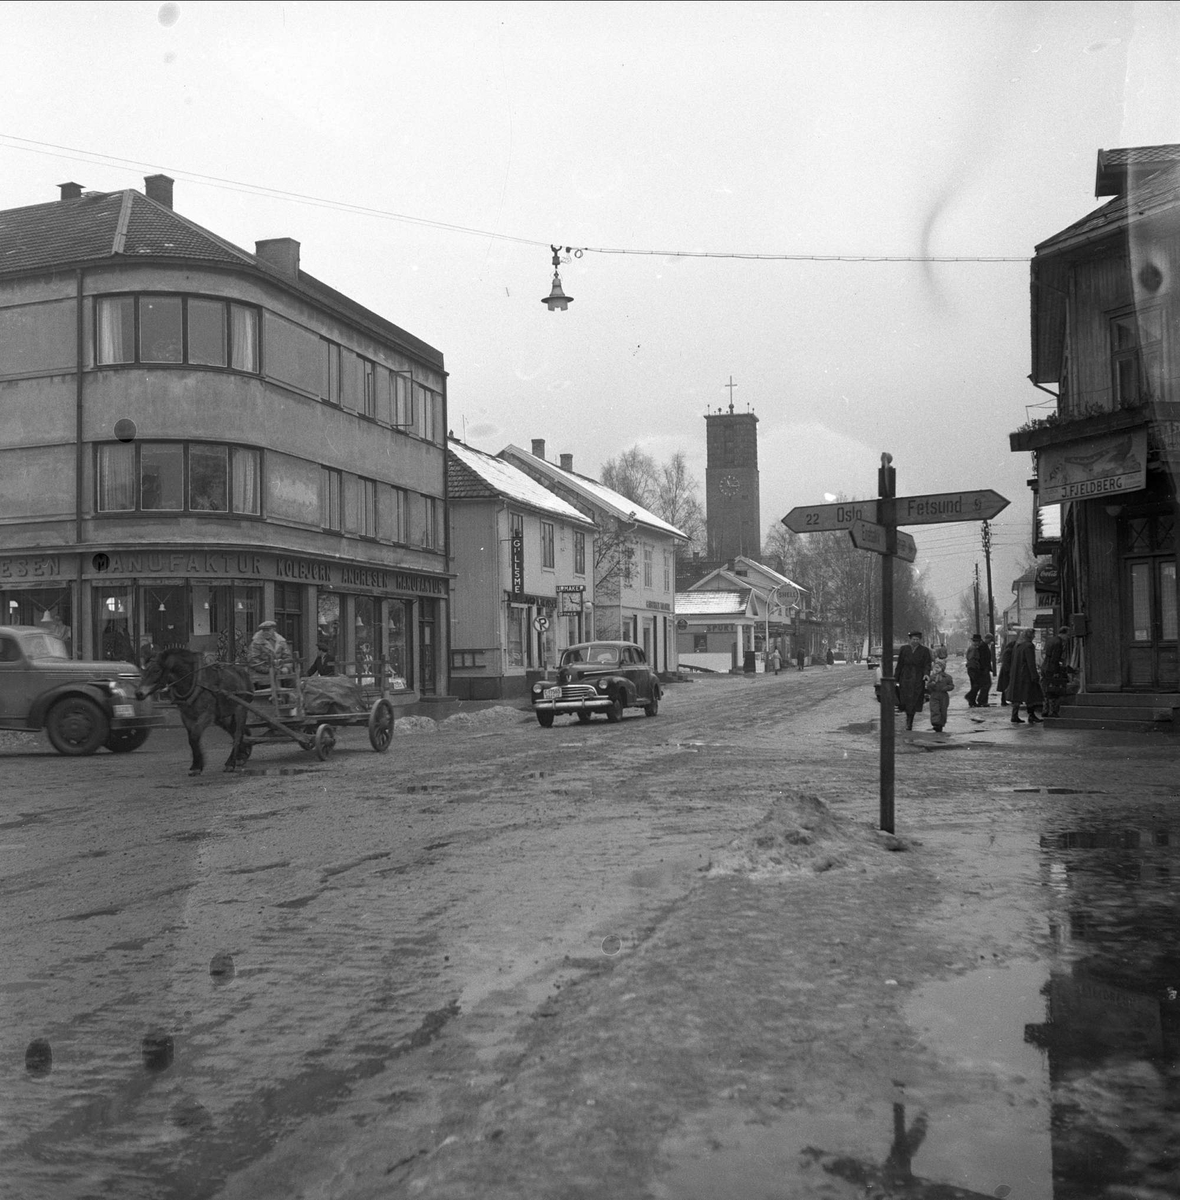 Lillestrøm, Skedsmo, Akershus, desember 1952. Storgata. Hester og biler i gata.